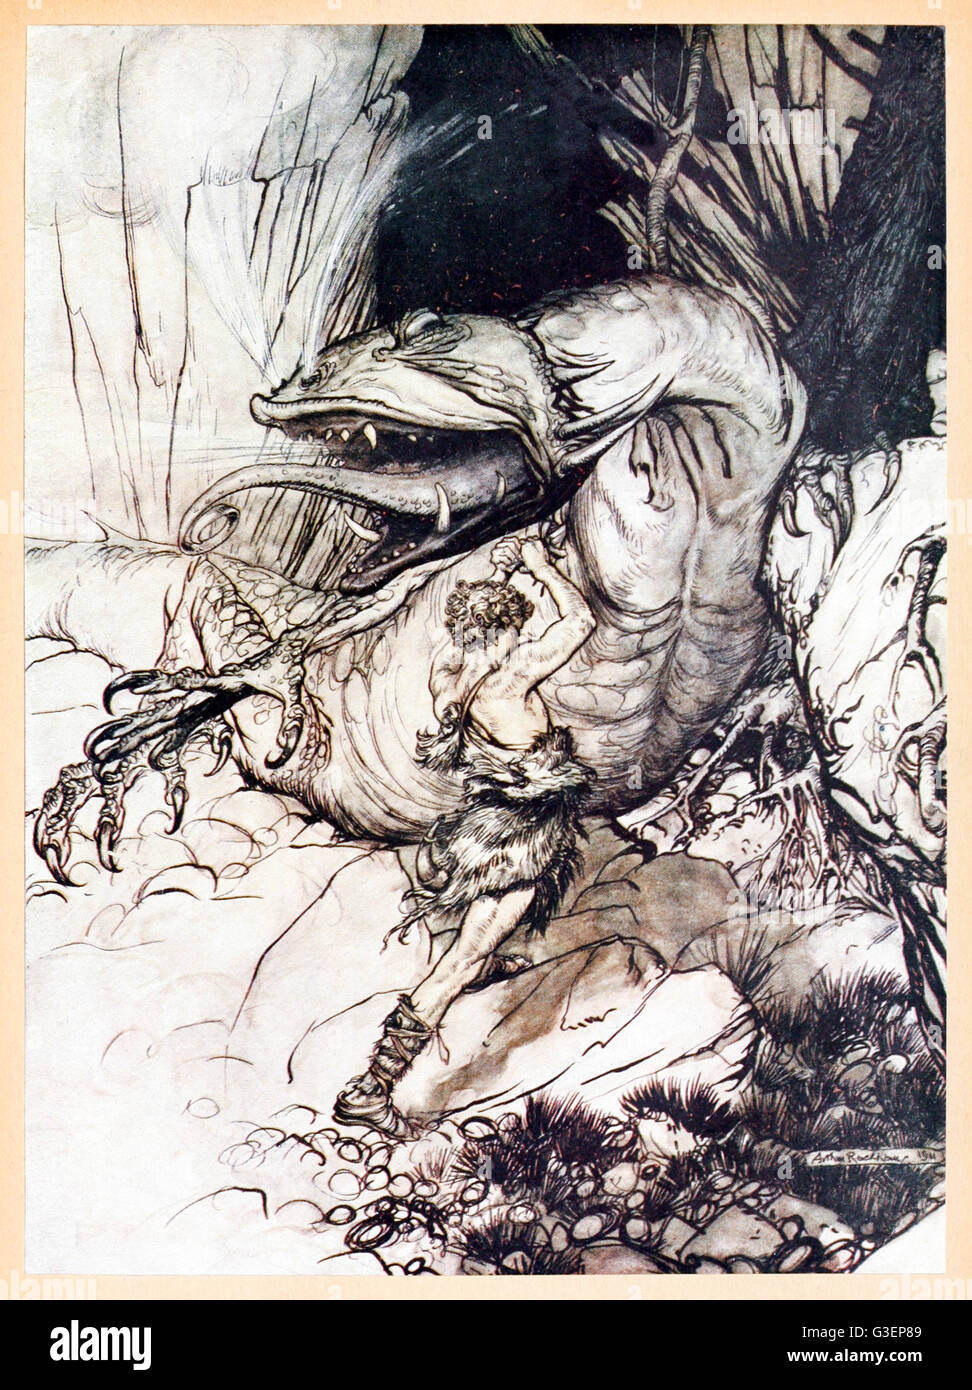 "Siegfried tue Père" de Siegfried "& Le Crépuscule des dieux' illustré par Arthur Rackham (1867-1939). Le géant Fafner poignarde Siegfried qui a transformé en un dragon à l'épée Nothung. Voir la description pour plus d'informations. Banque D'Images